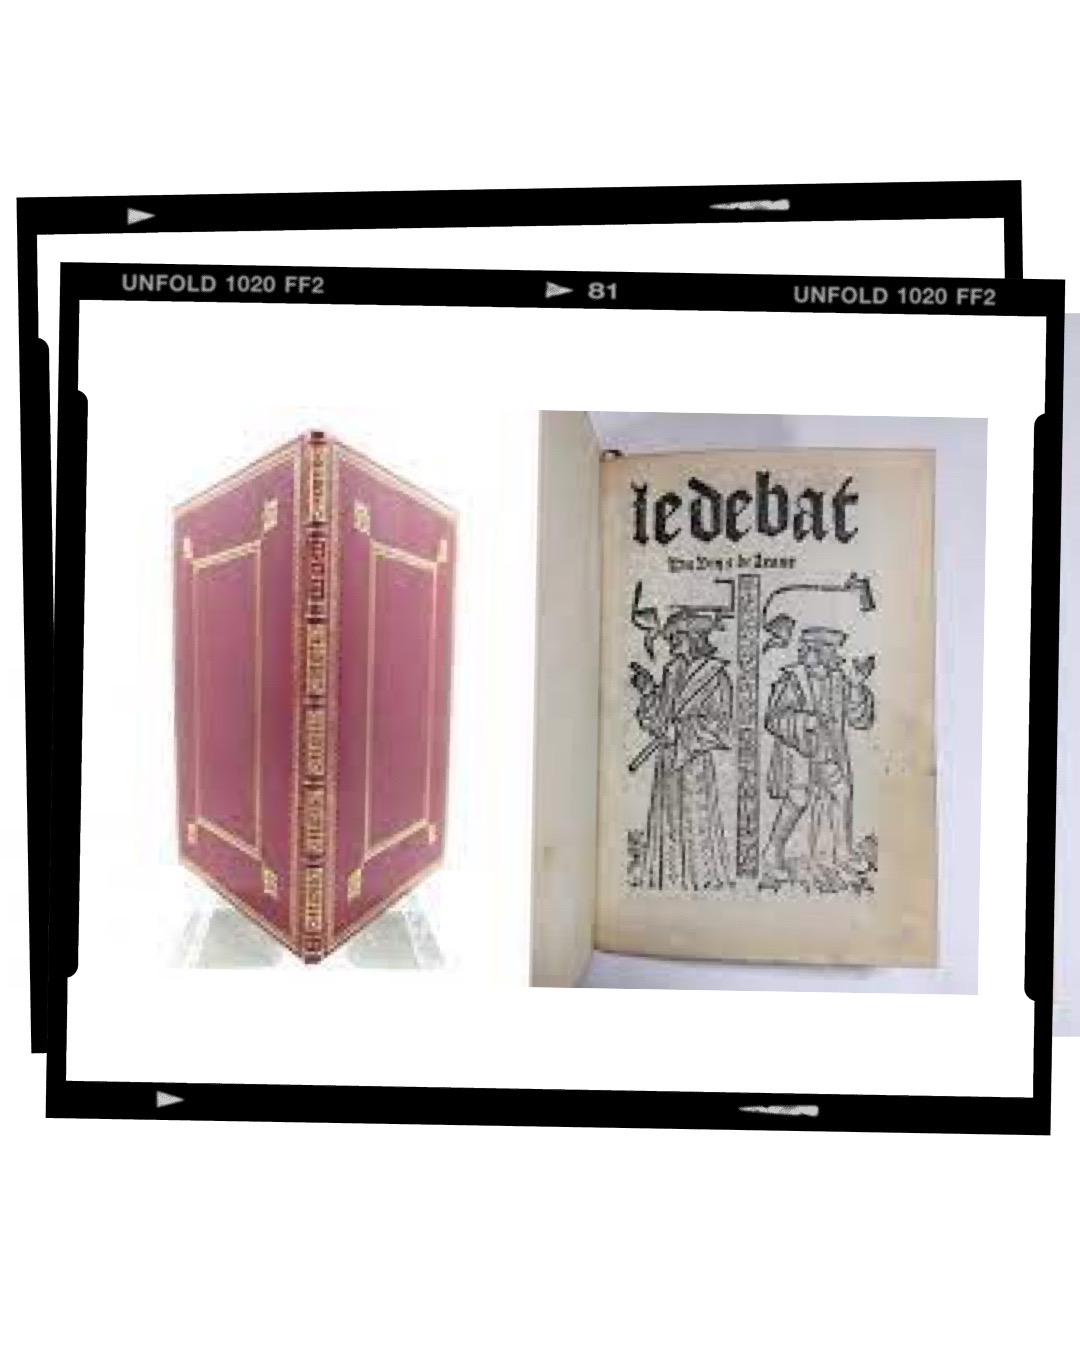 UC Davis Library Acquires “Le débat du vin et de leaue” the first wine book written in French [dated 1515]